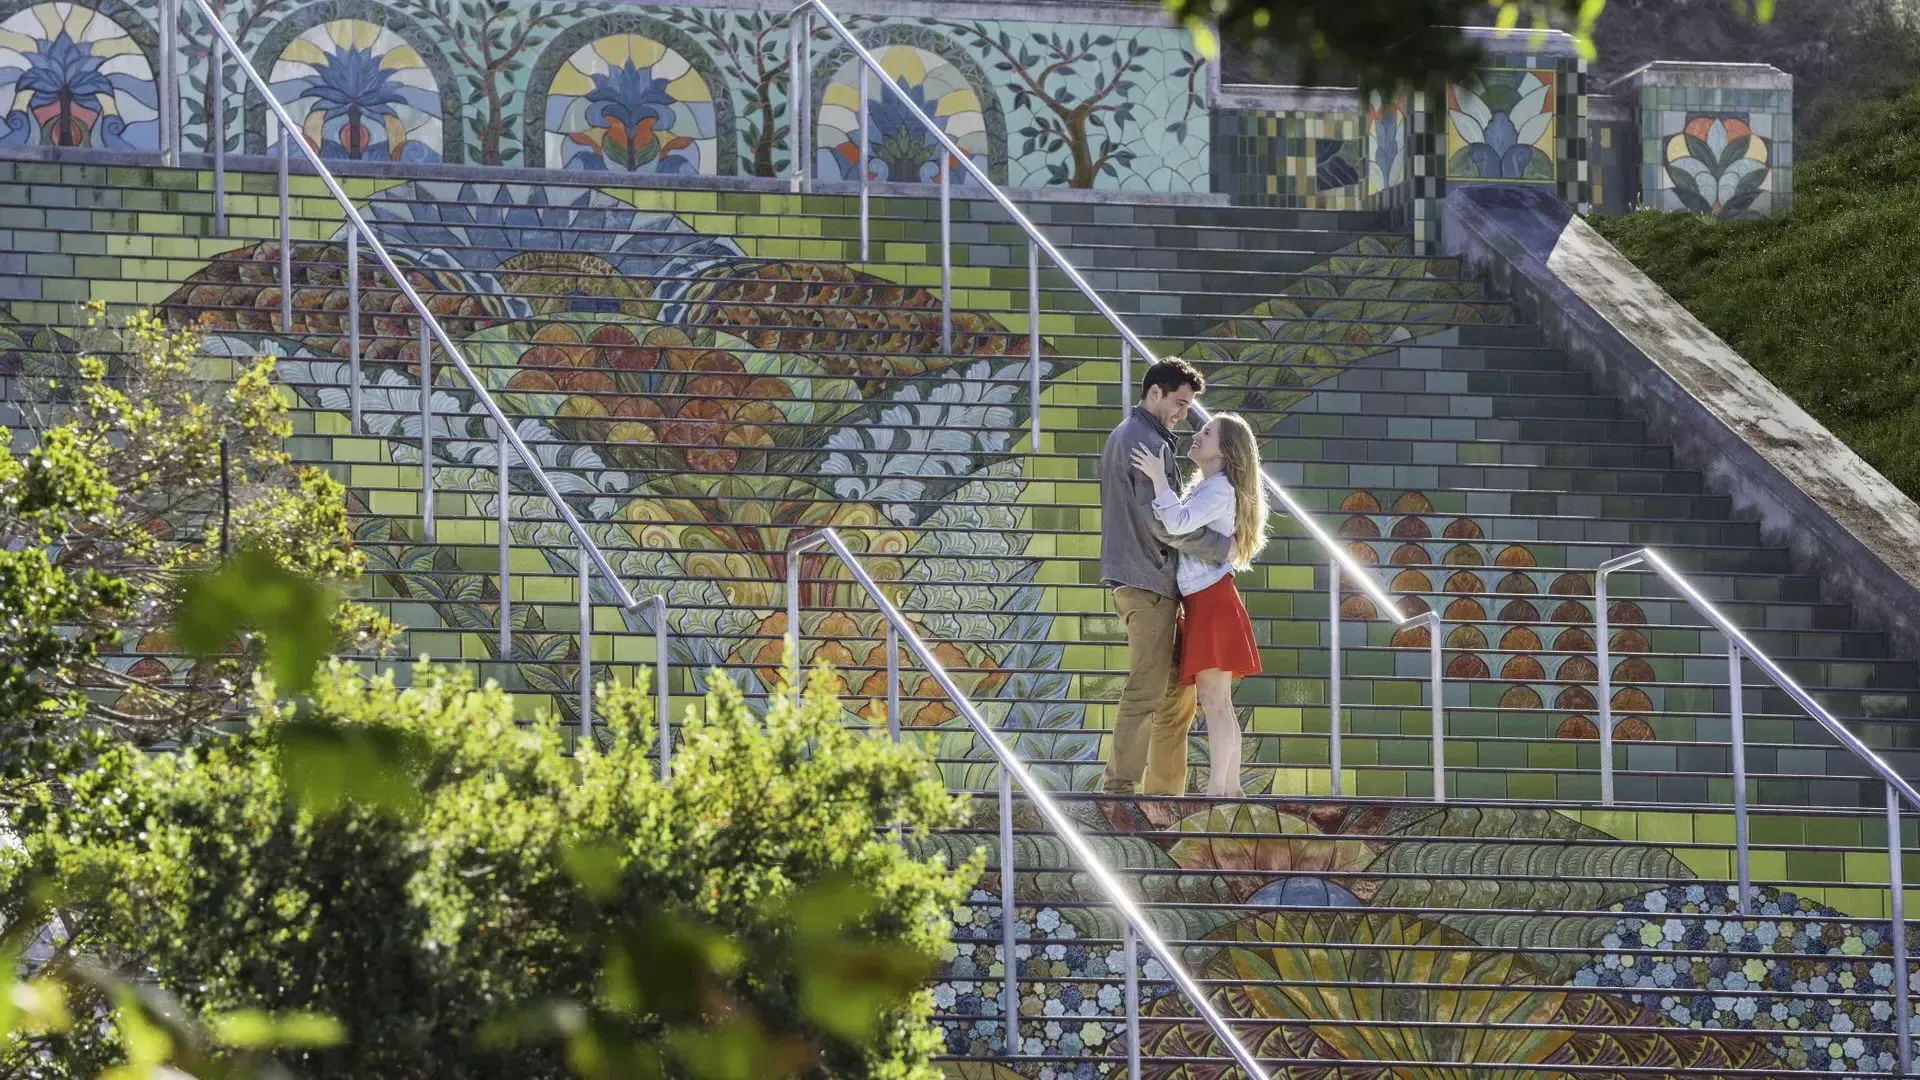 这张照片是从一对夫妇站在林肯公园彩色瓷砖台阶上的角度拍摄的